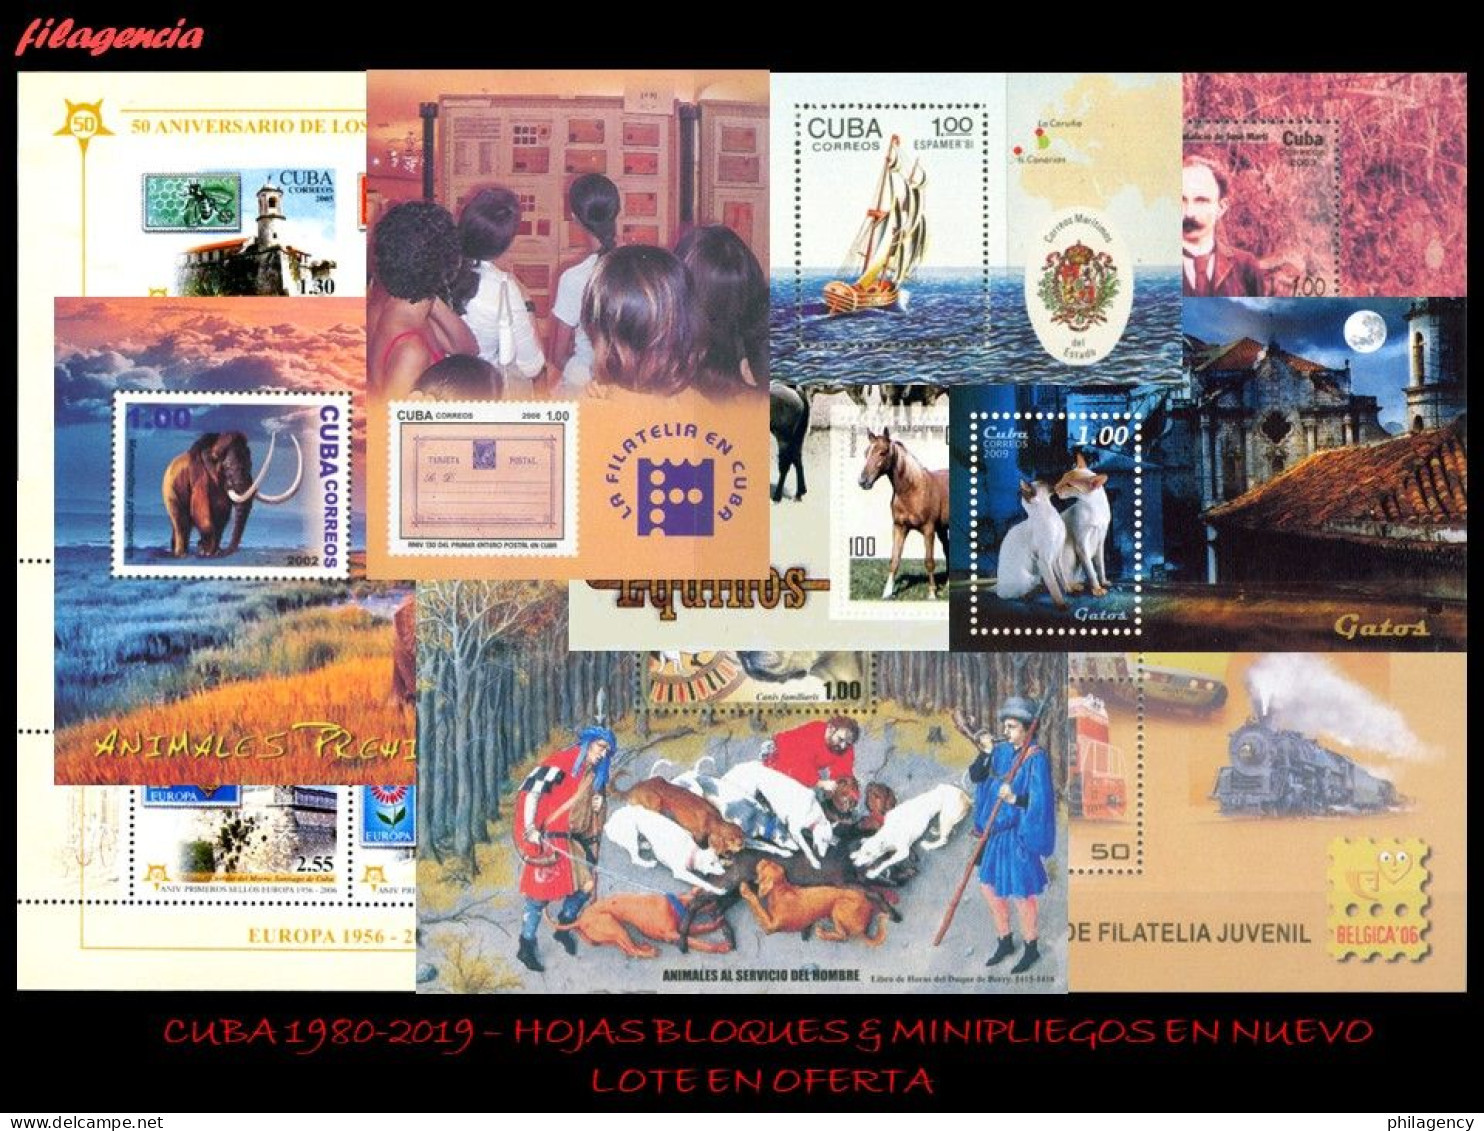 LOTES EN OFERTA. CUBA MINT. 1980-2019 LOTE DE 100 HOJAS BLOQUES & MINIPLIEGOS DIFERENTES MNH - Blocchi & Foglietti